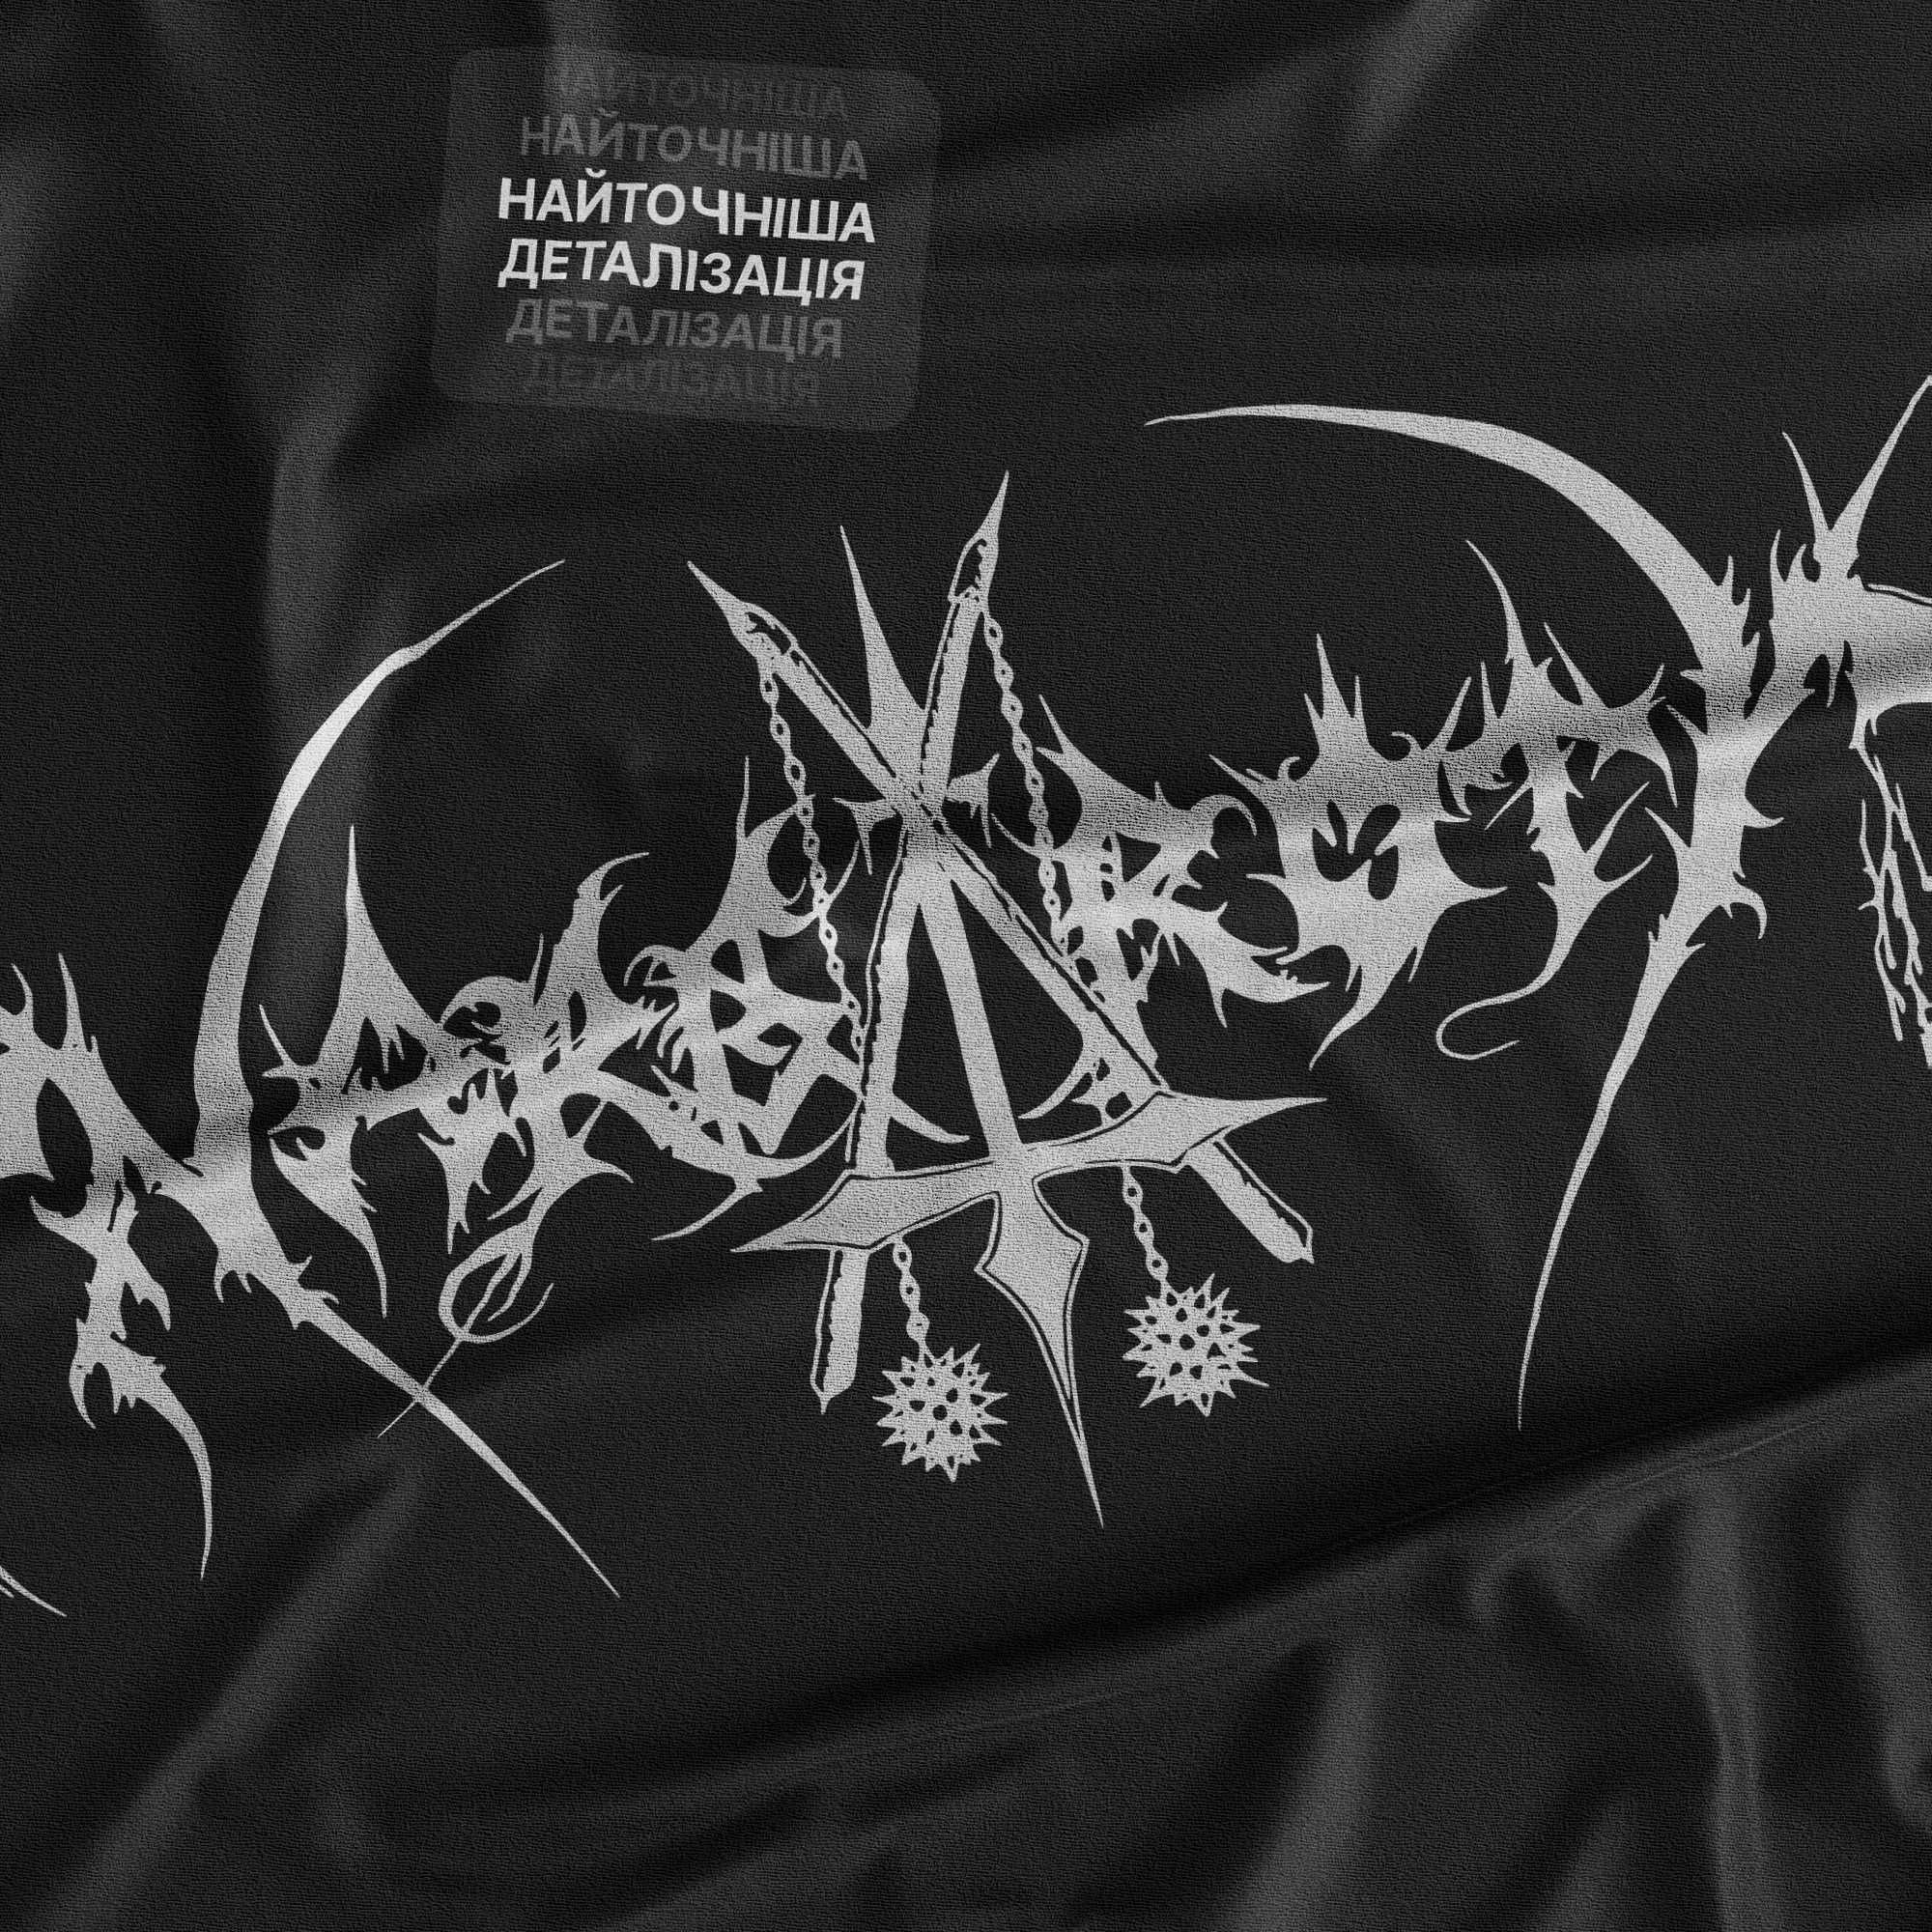 Nargaroth футболка, Nargaroth T-Shirt, Black metal